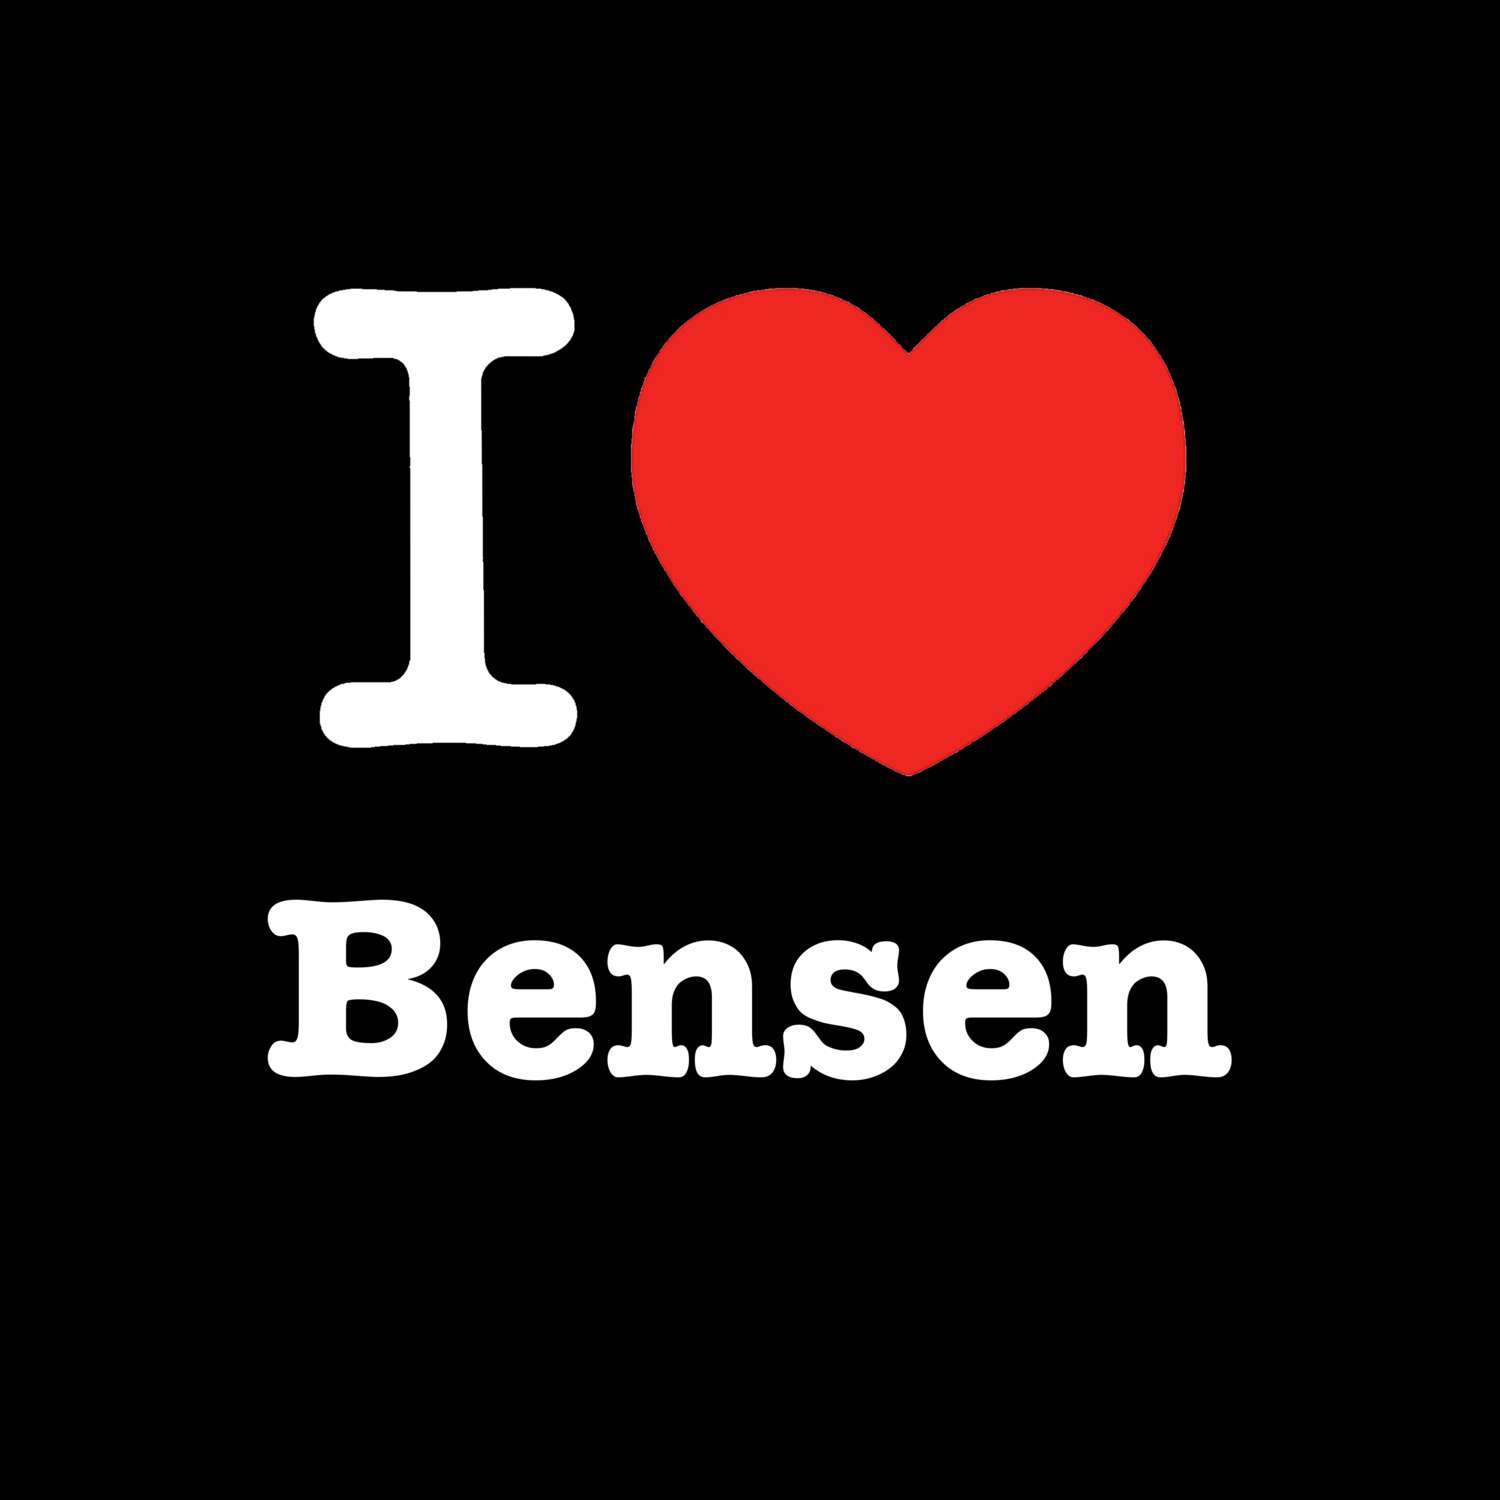 Bensen T-Shirt »I love«